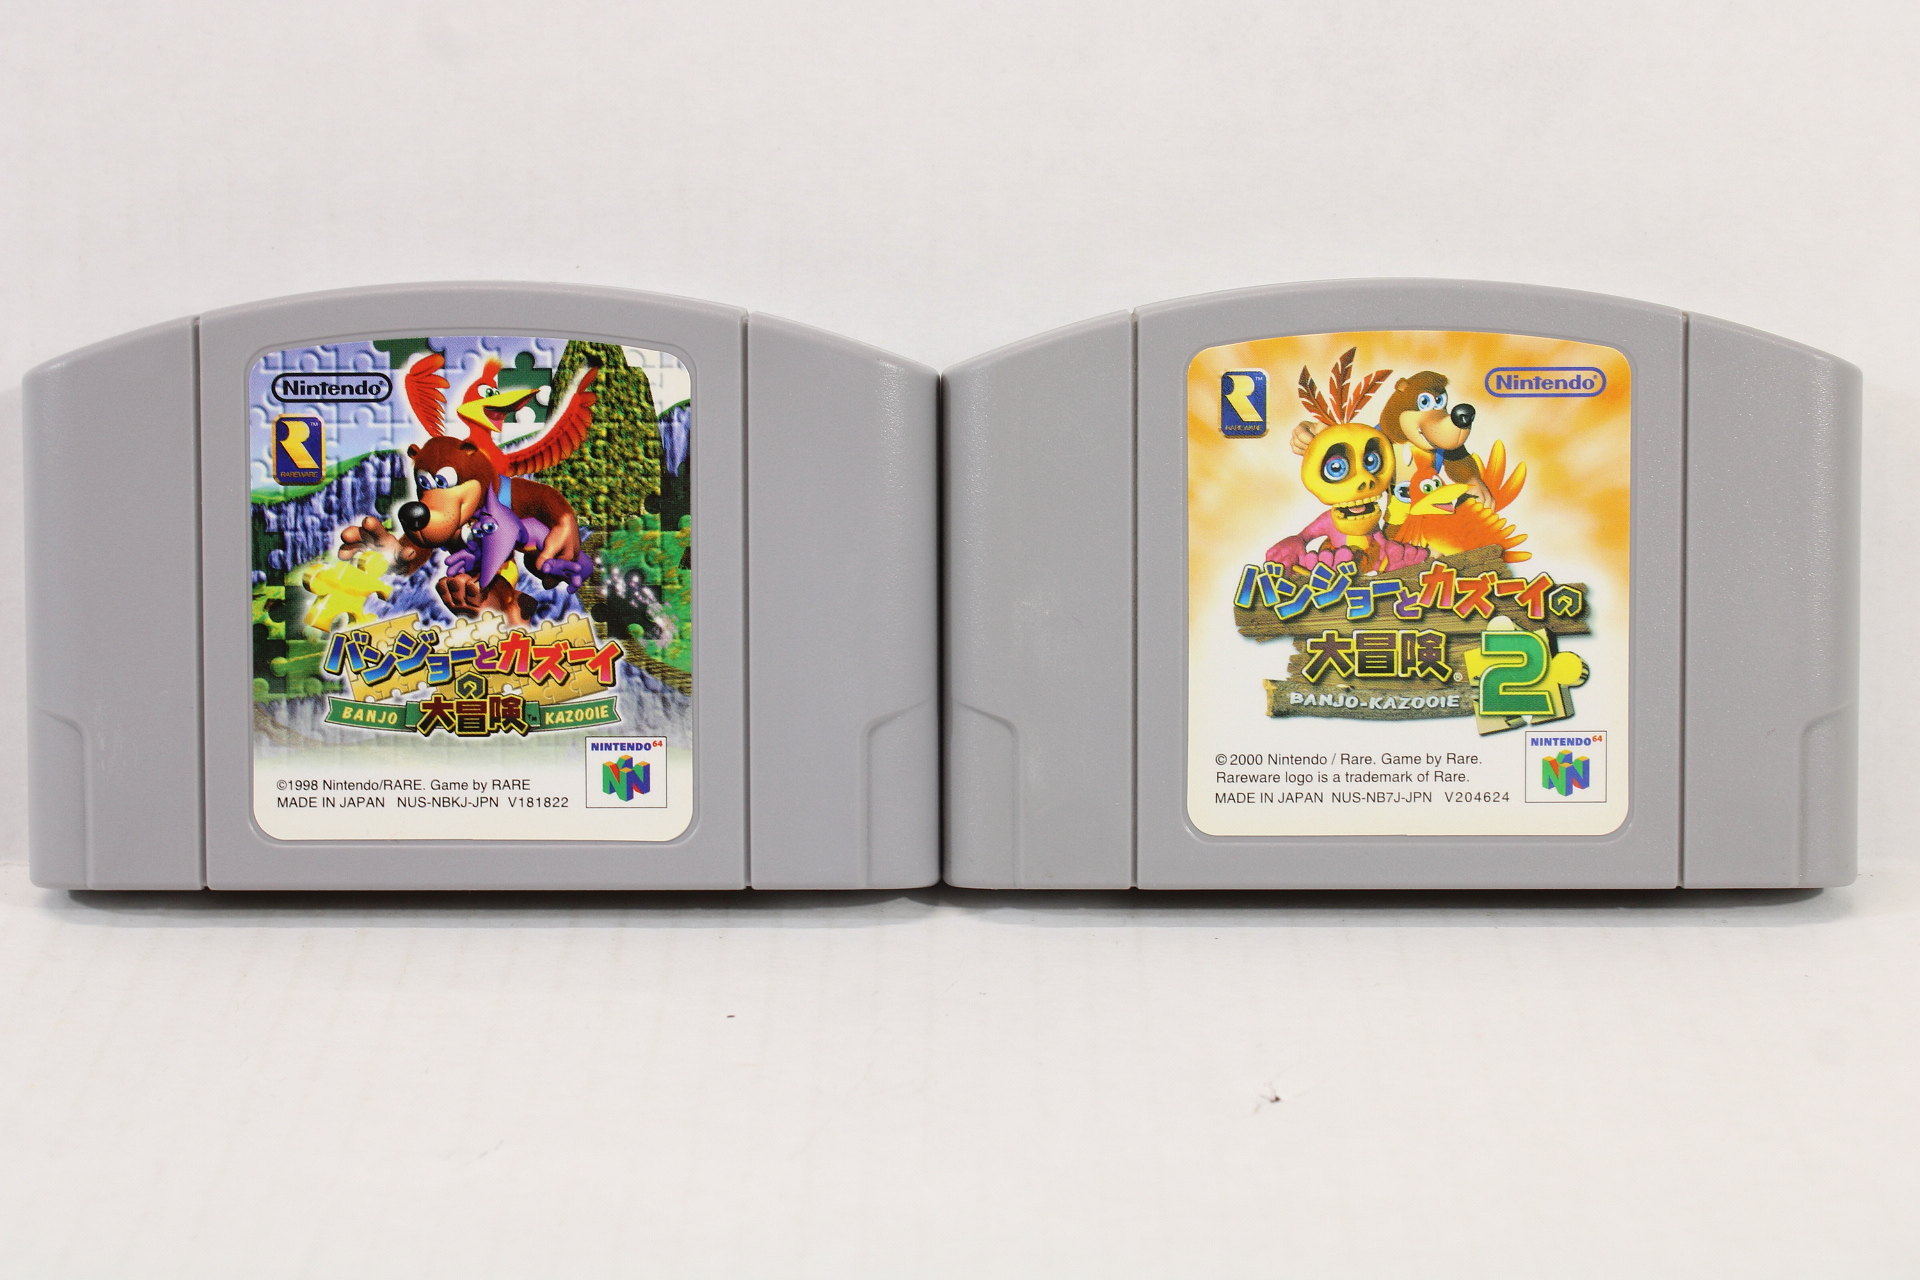 Banjo-Kazooie - Nintendo 64, Nintendo 64